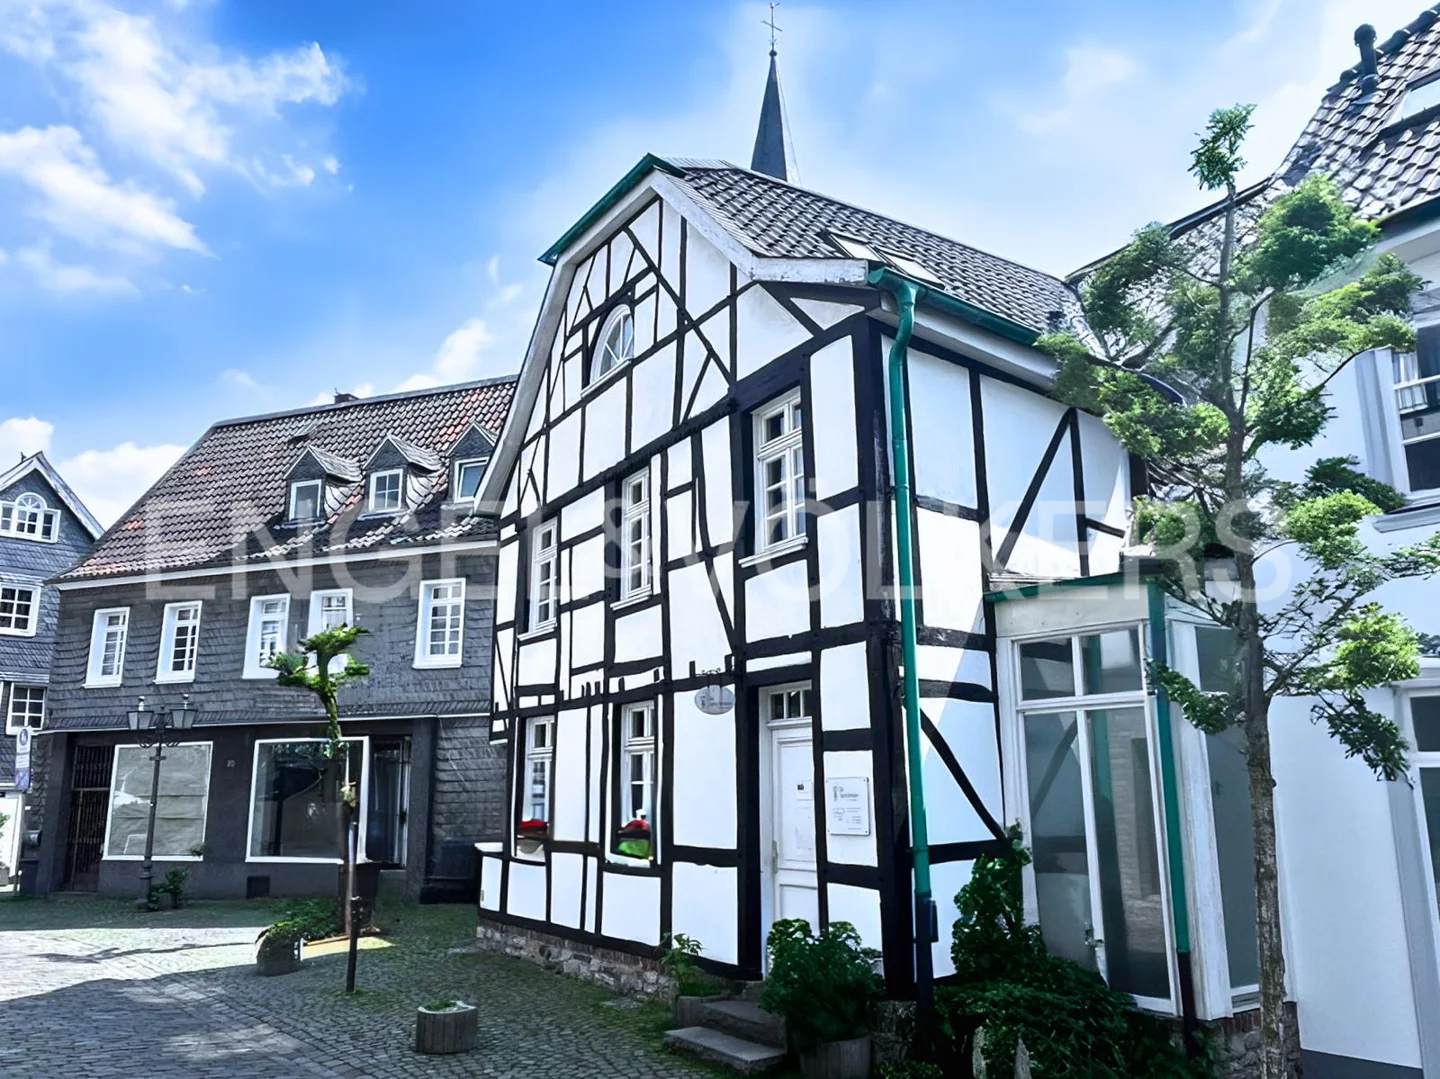 "Historischer Charme in Bestlage: Gemütliche 3-Zimmer-Wohnung mit Balkon"